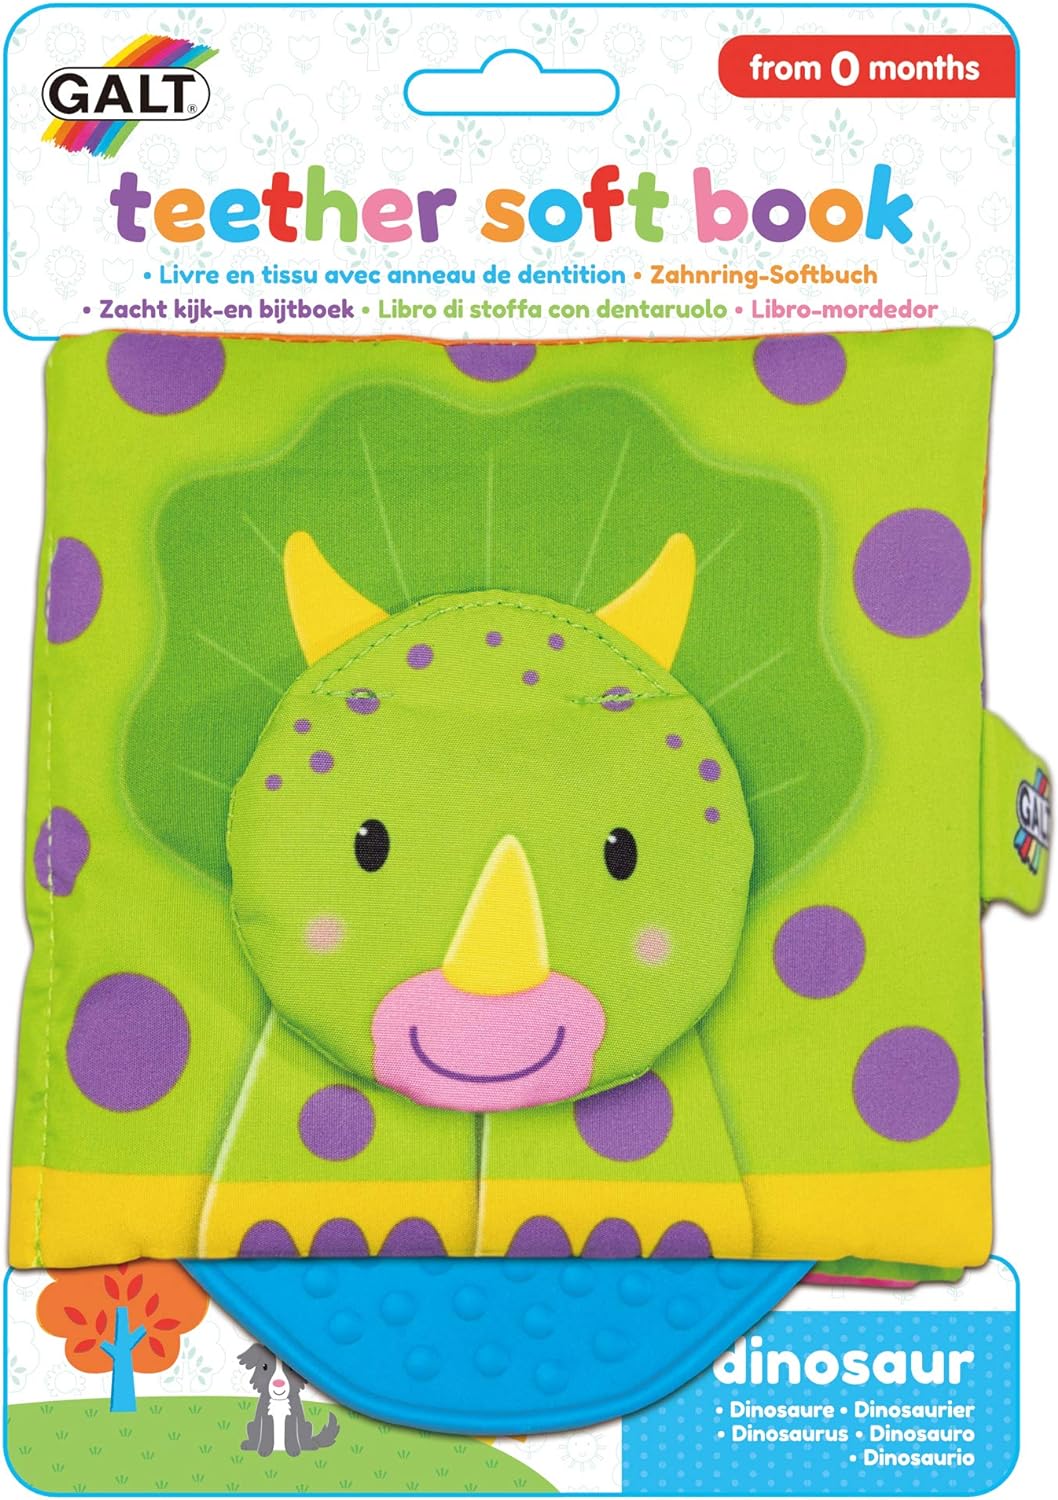 Galt Teether Soft Book: Dinosaur